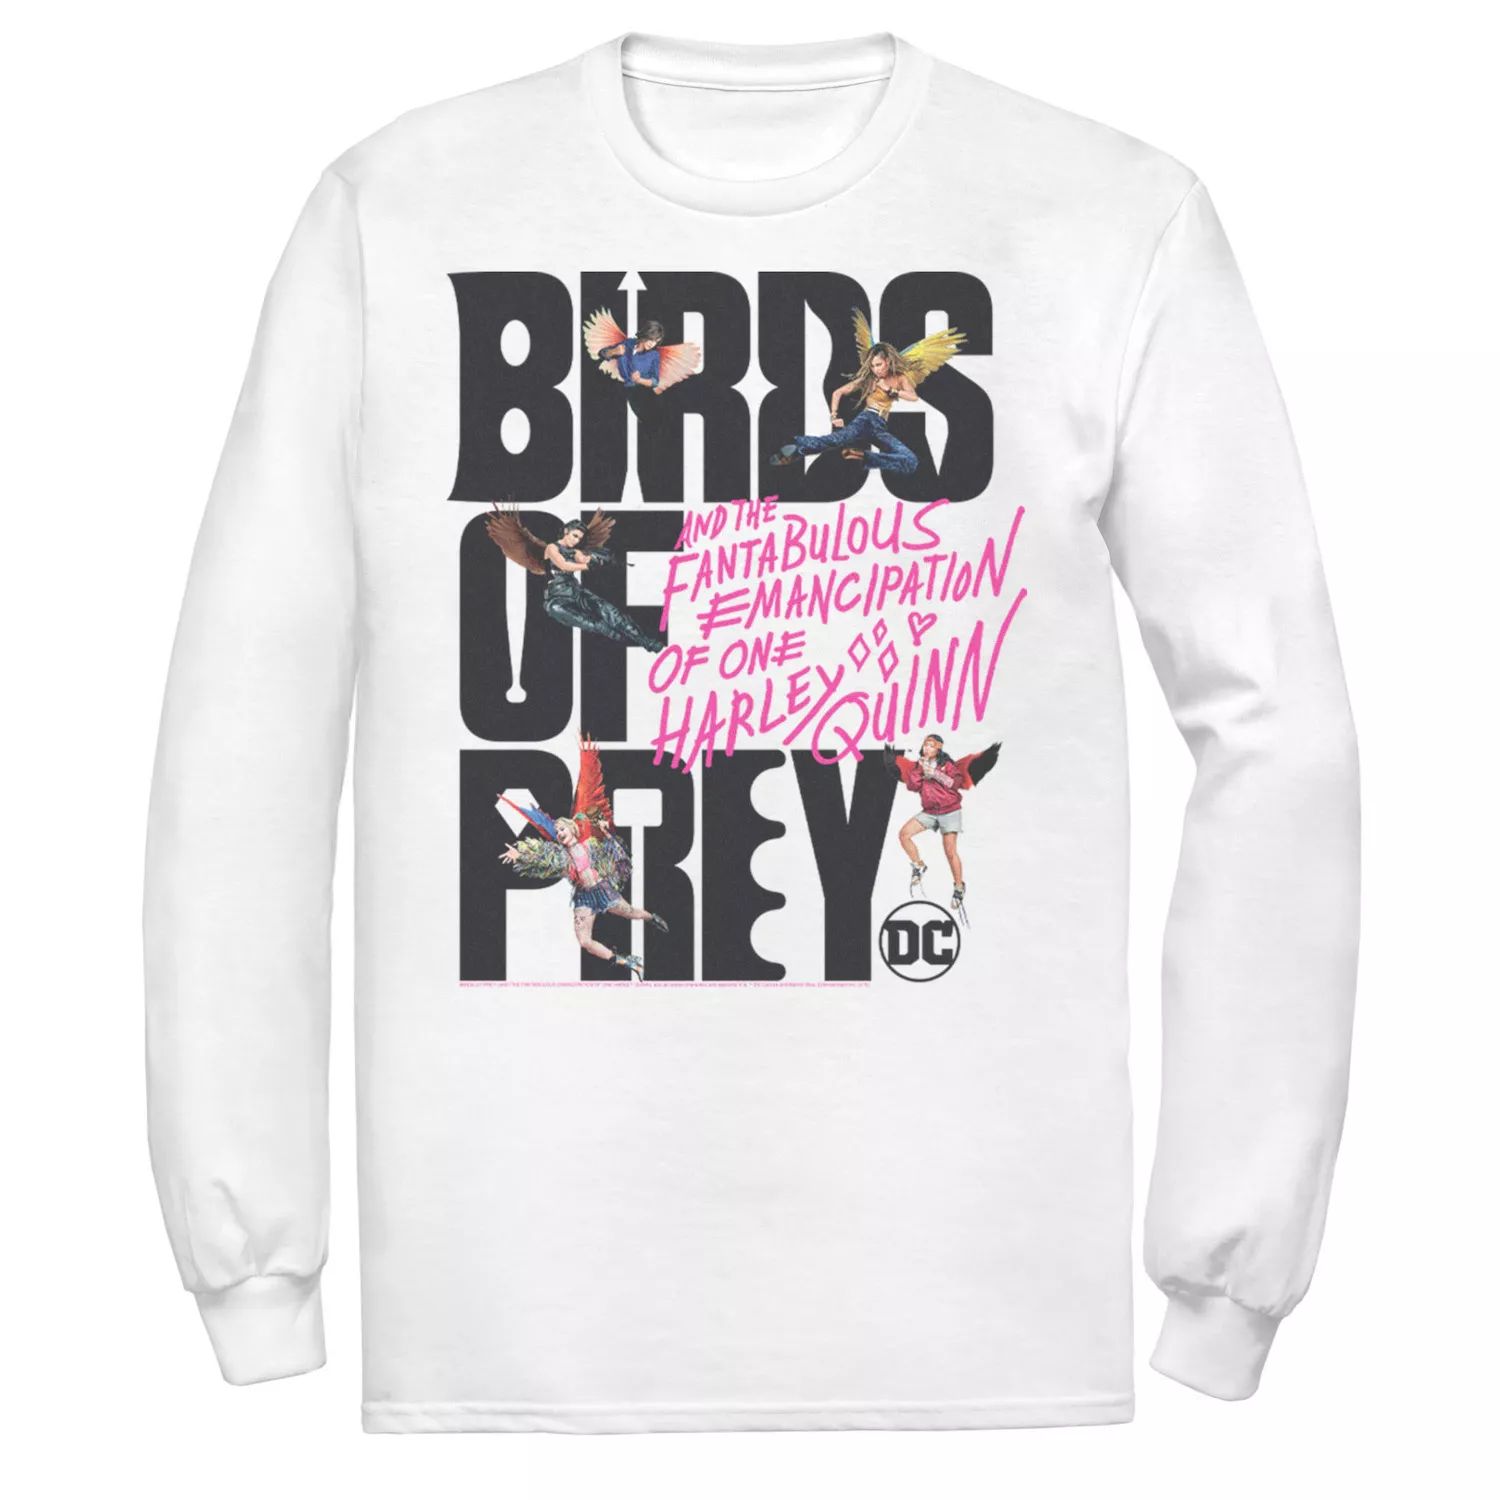 Мужская футболка с надписью «Хищные птицы» и коллажем DC Comics приор групп наклейка патч для одежды dc хищные птицы – 1